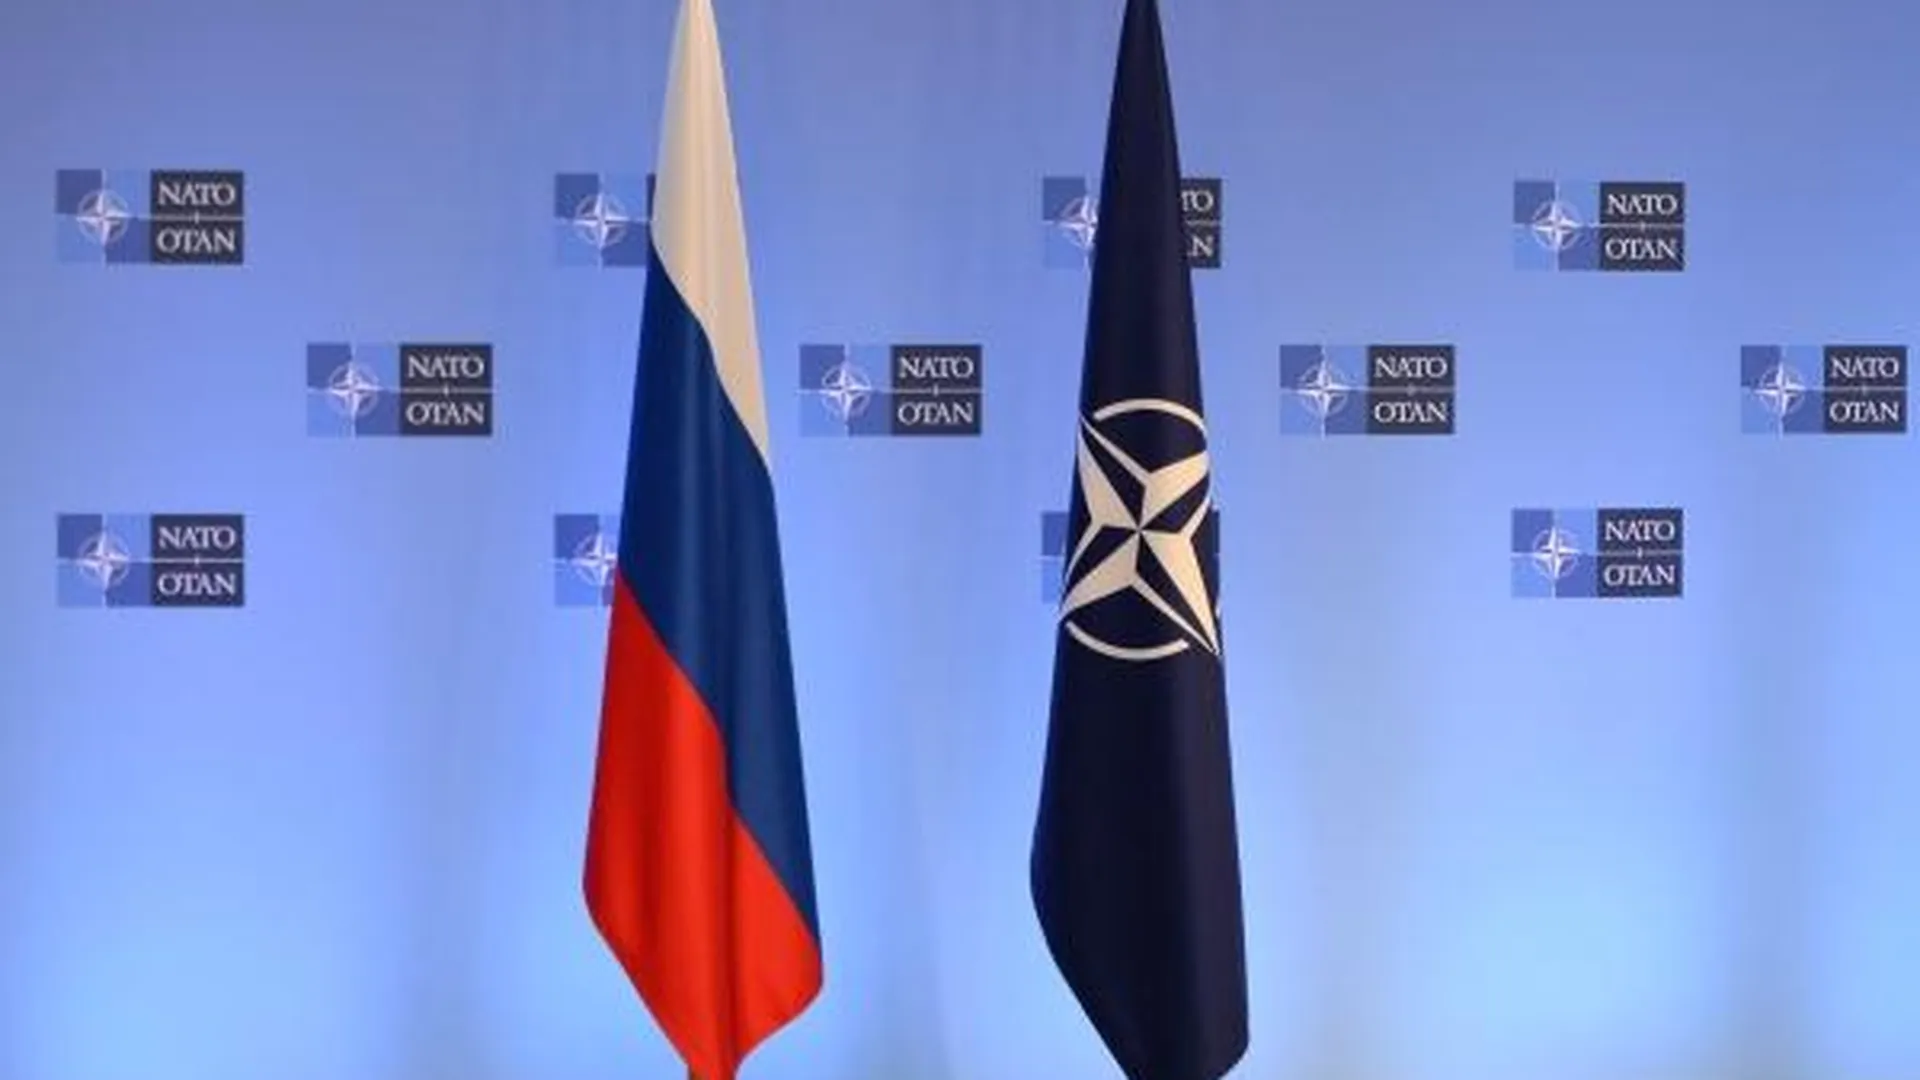 Американская демагогия. Почему Россию не приняли в НАТО